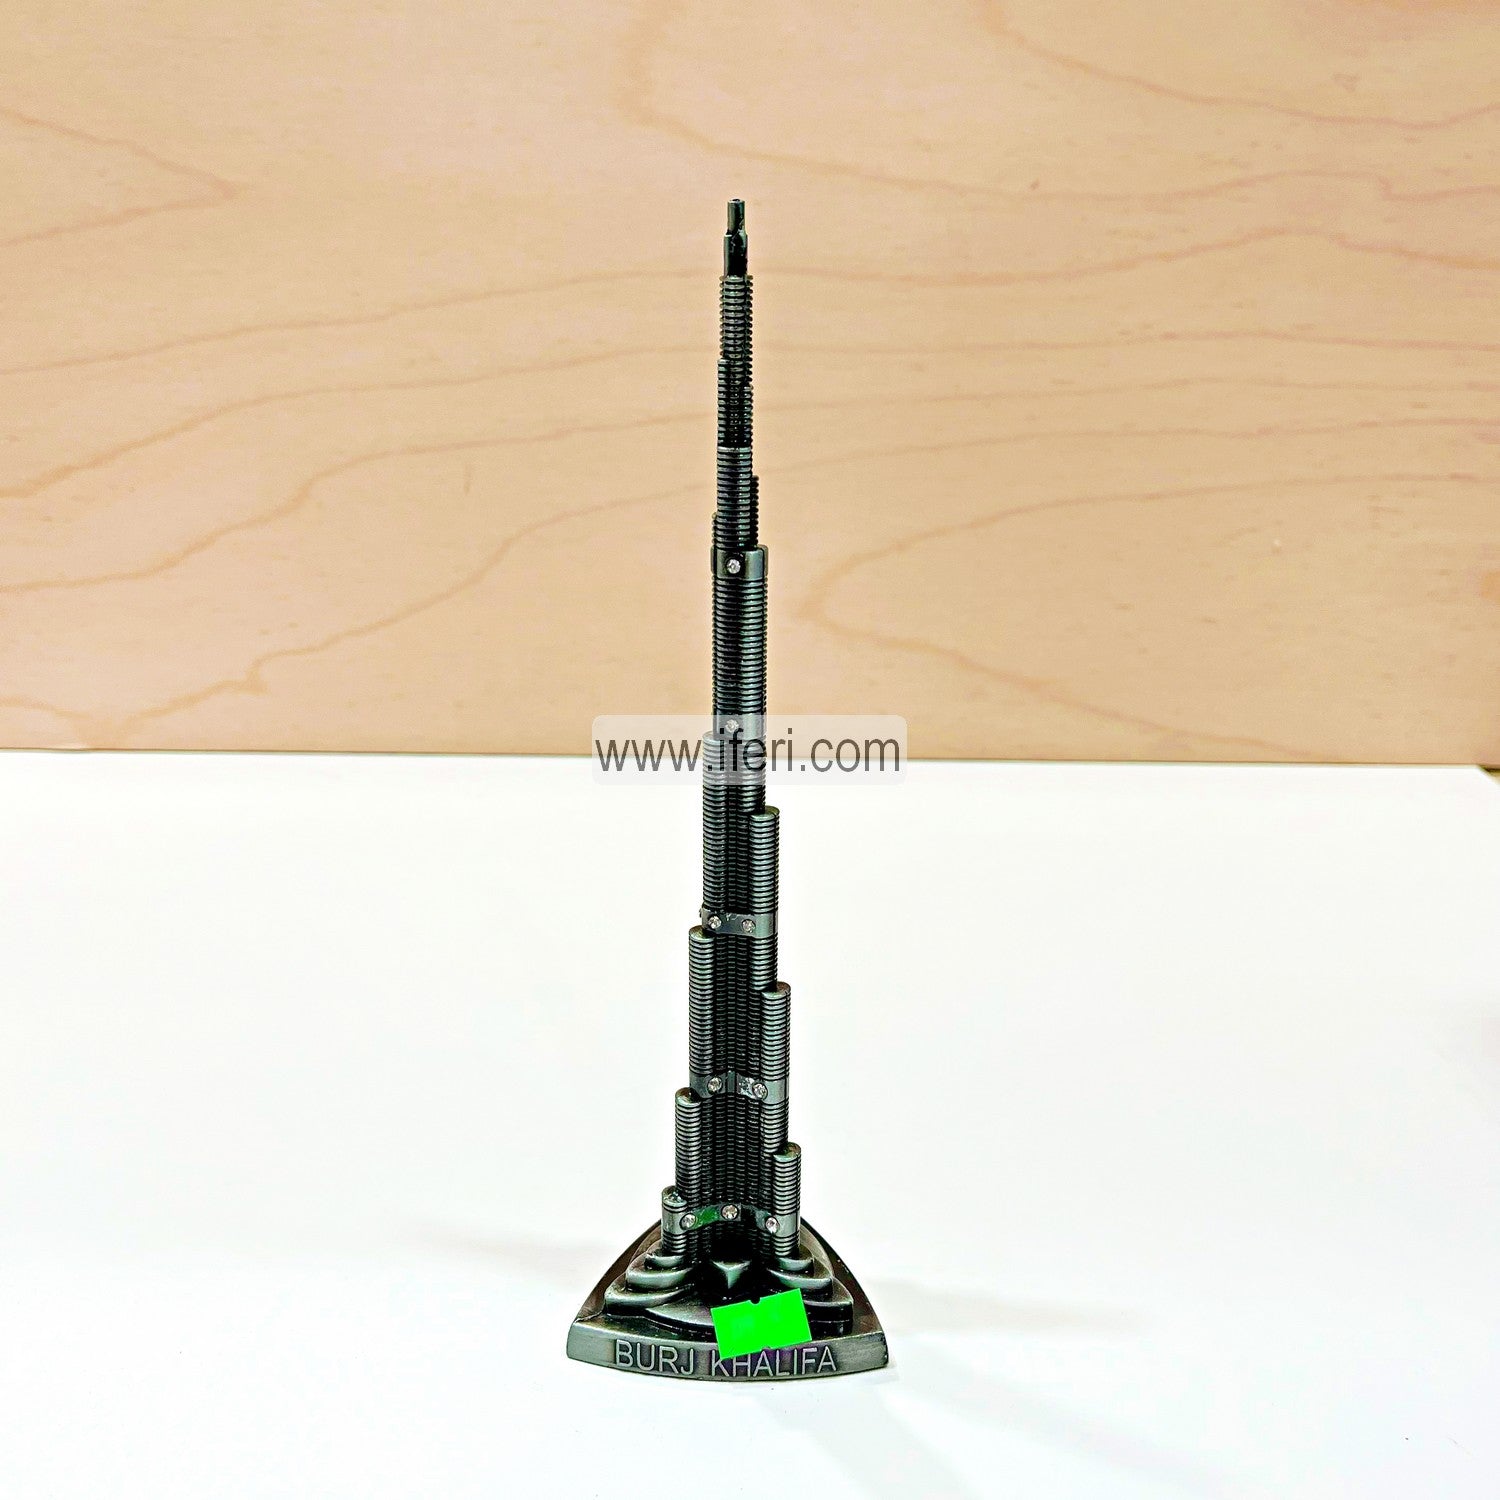 10 Inch Metal Burj Khalifa Sculpture Showpiece HR1701